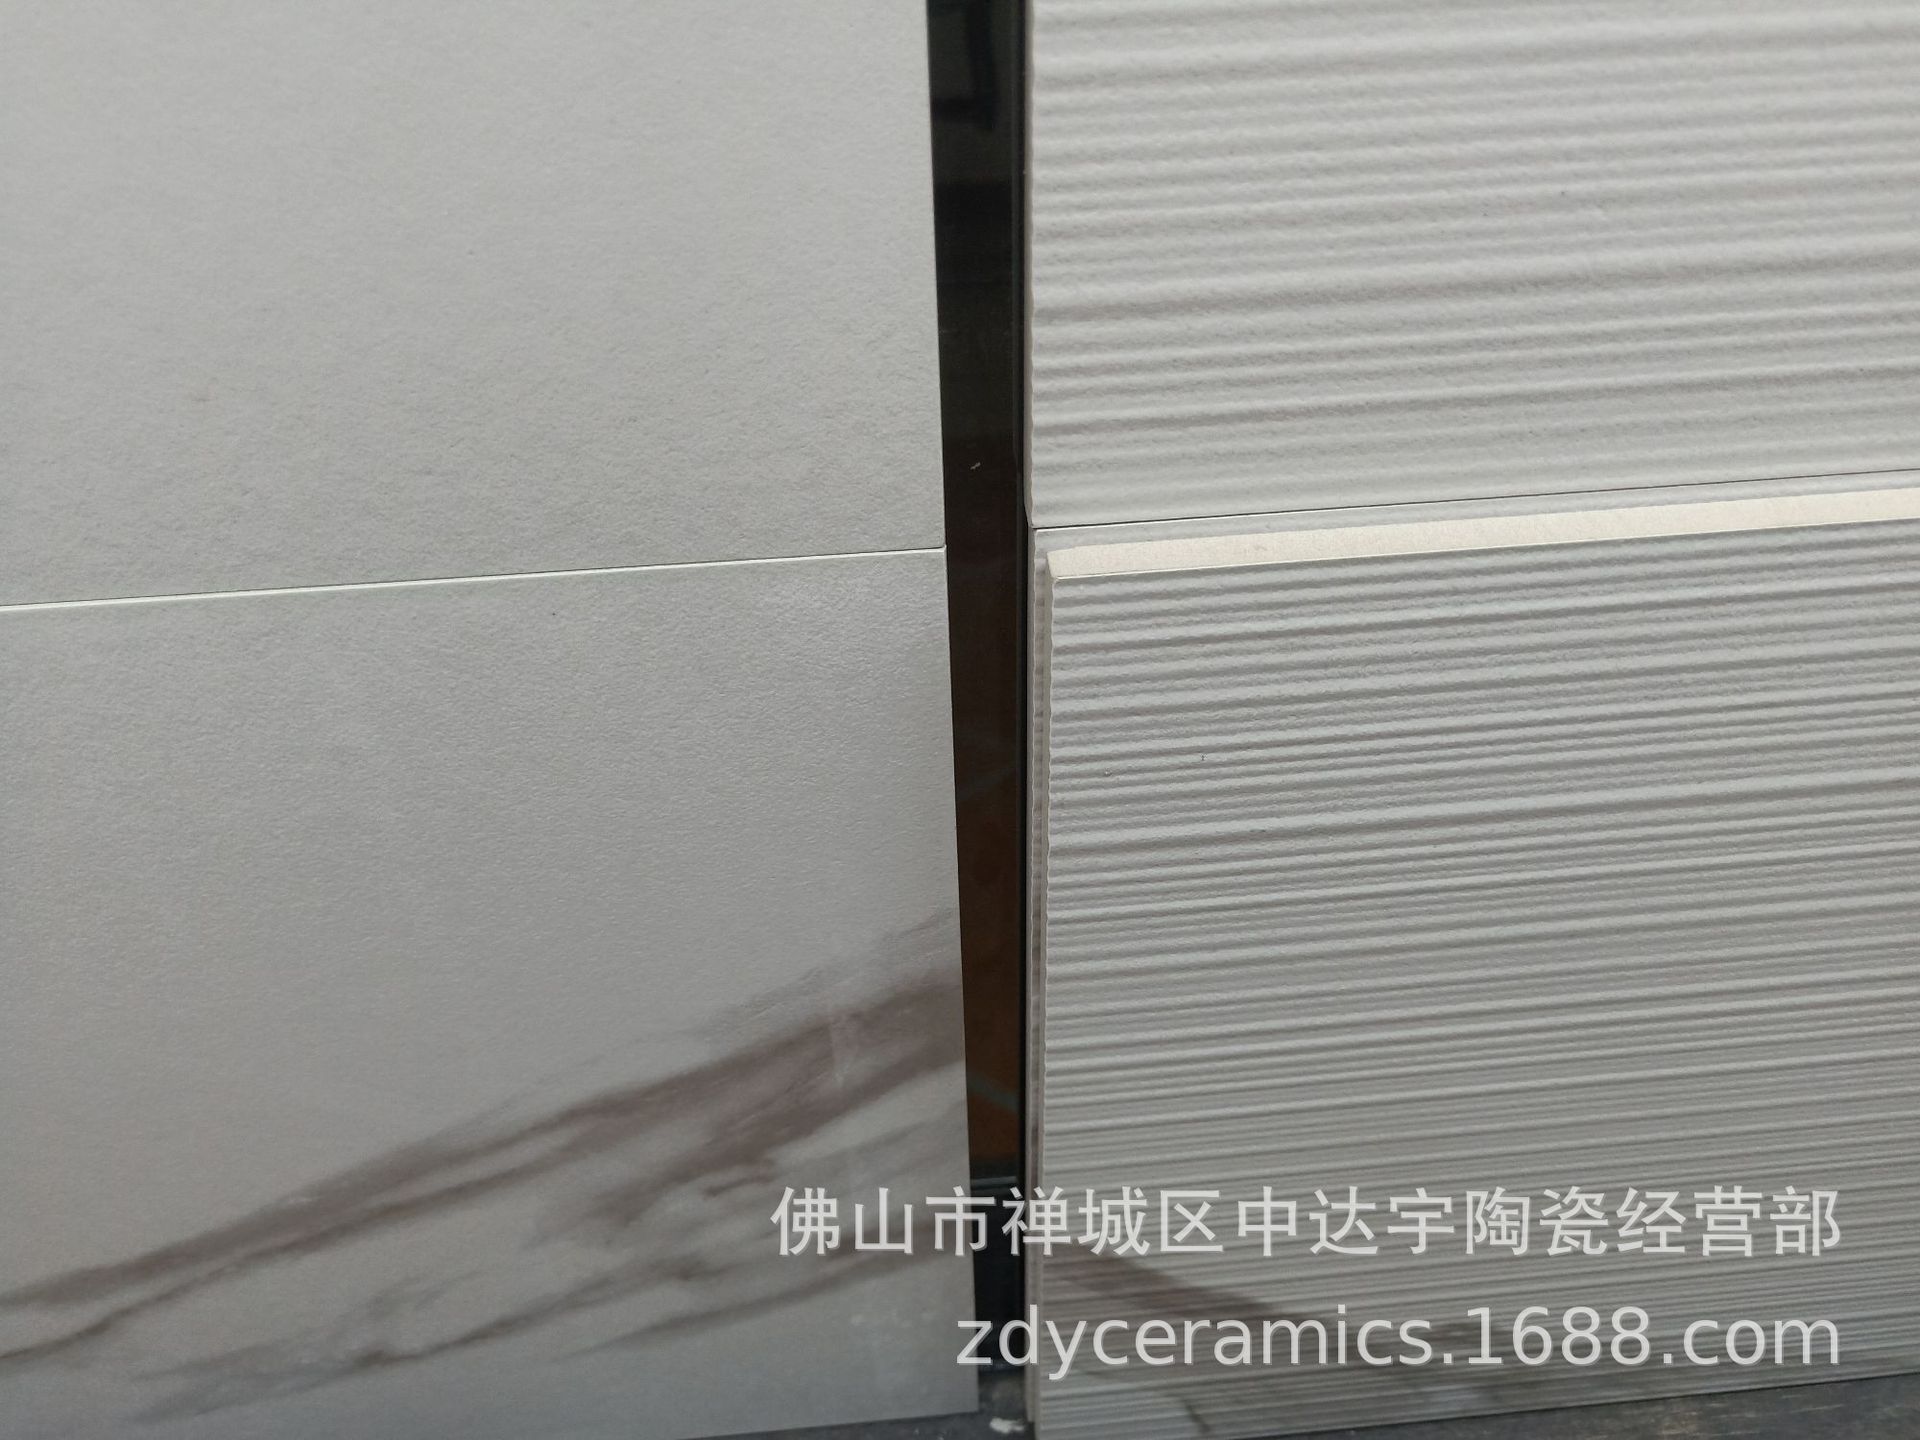 佛山新系列300X900mm 仿古瓷砖防滑防潮客厅厨房浴室墙面砖地面砖JXHD390示例图3